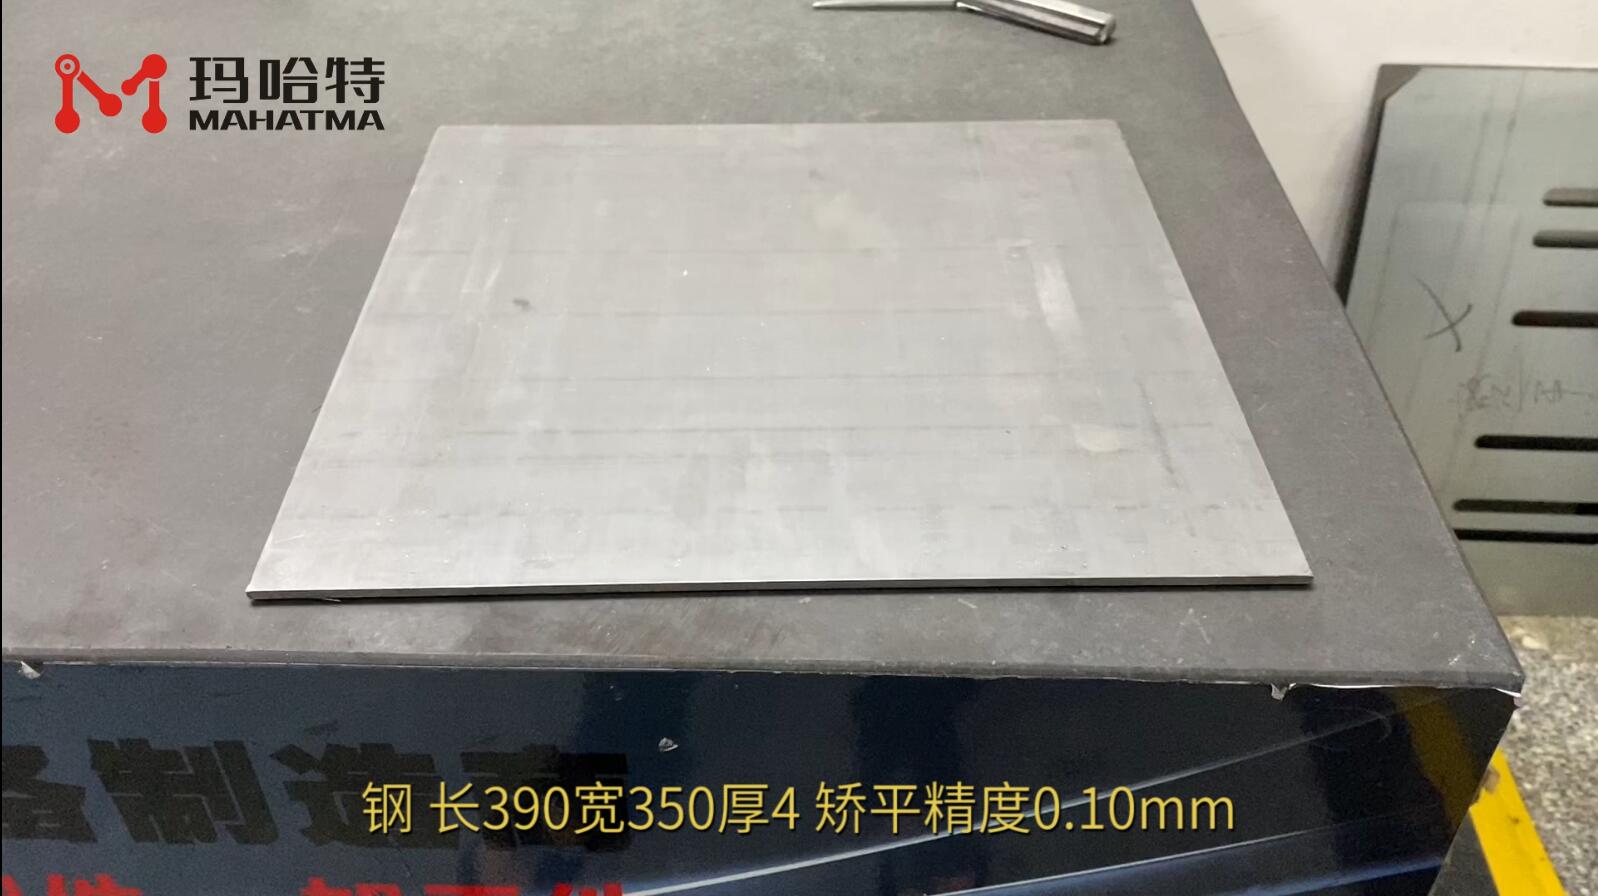 钢 MHT80-800 长方形 长390宽350厚4 矫平精度0.10mm